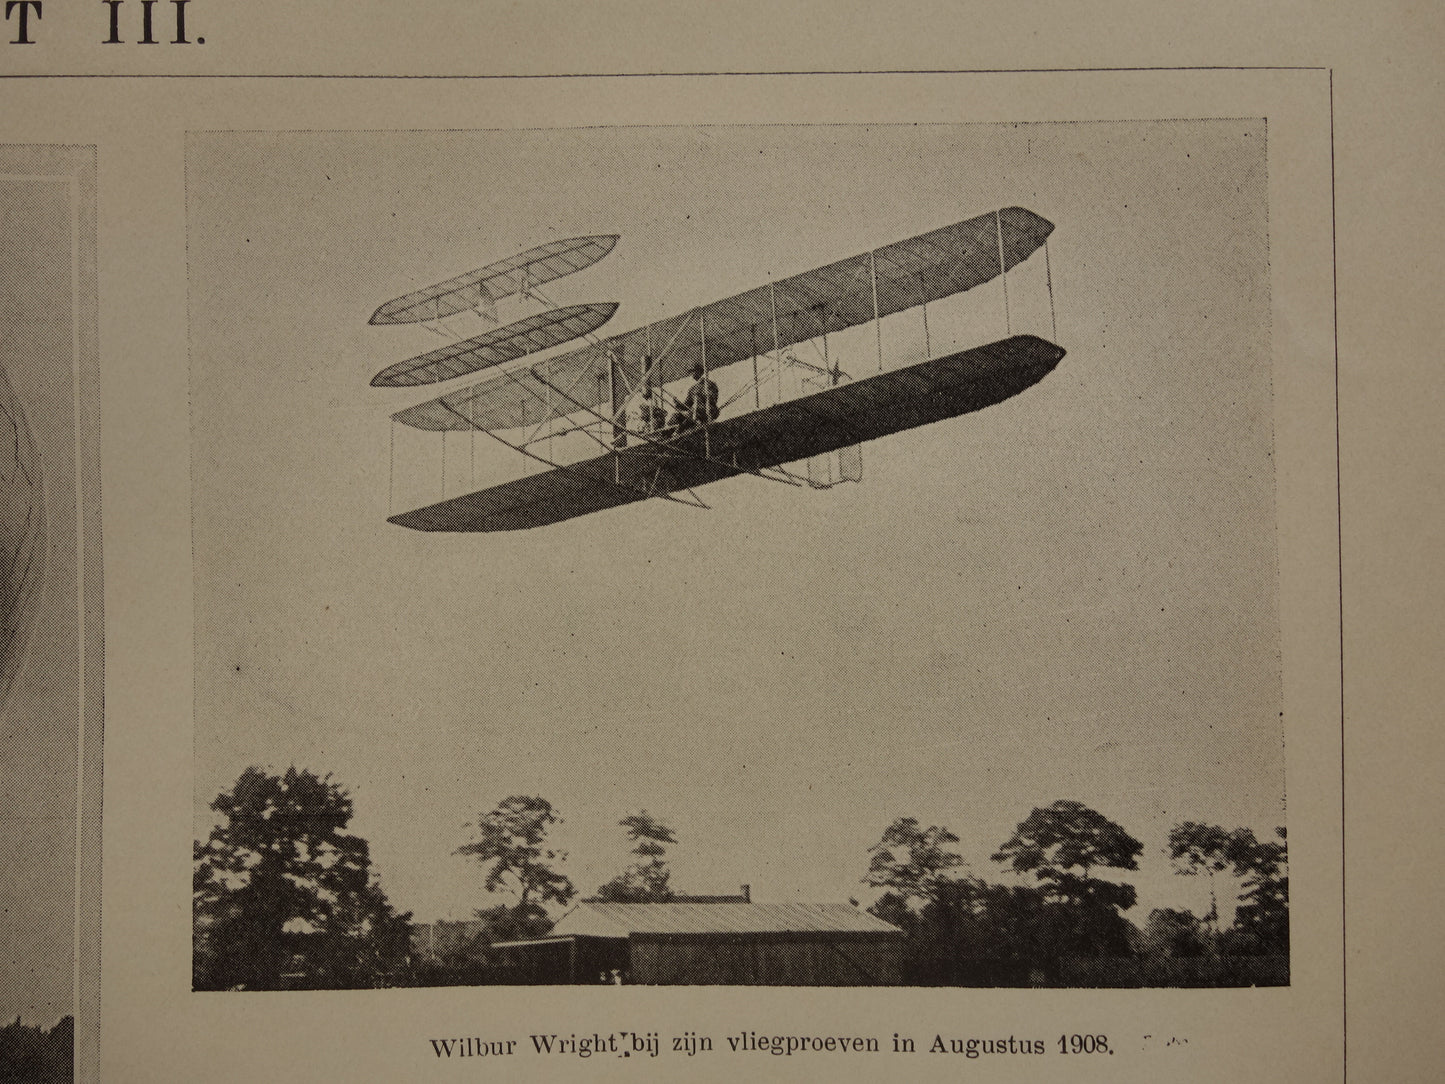 Wilbur Wright in vliegtuig in augustus 1908